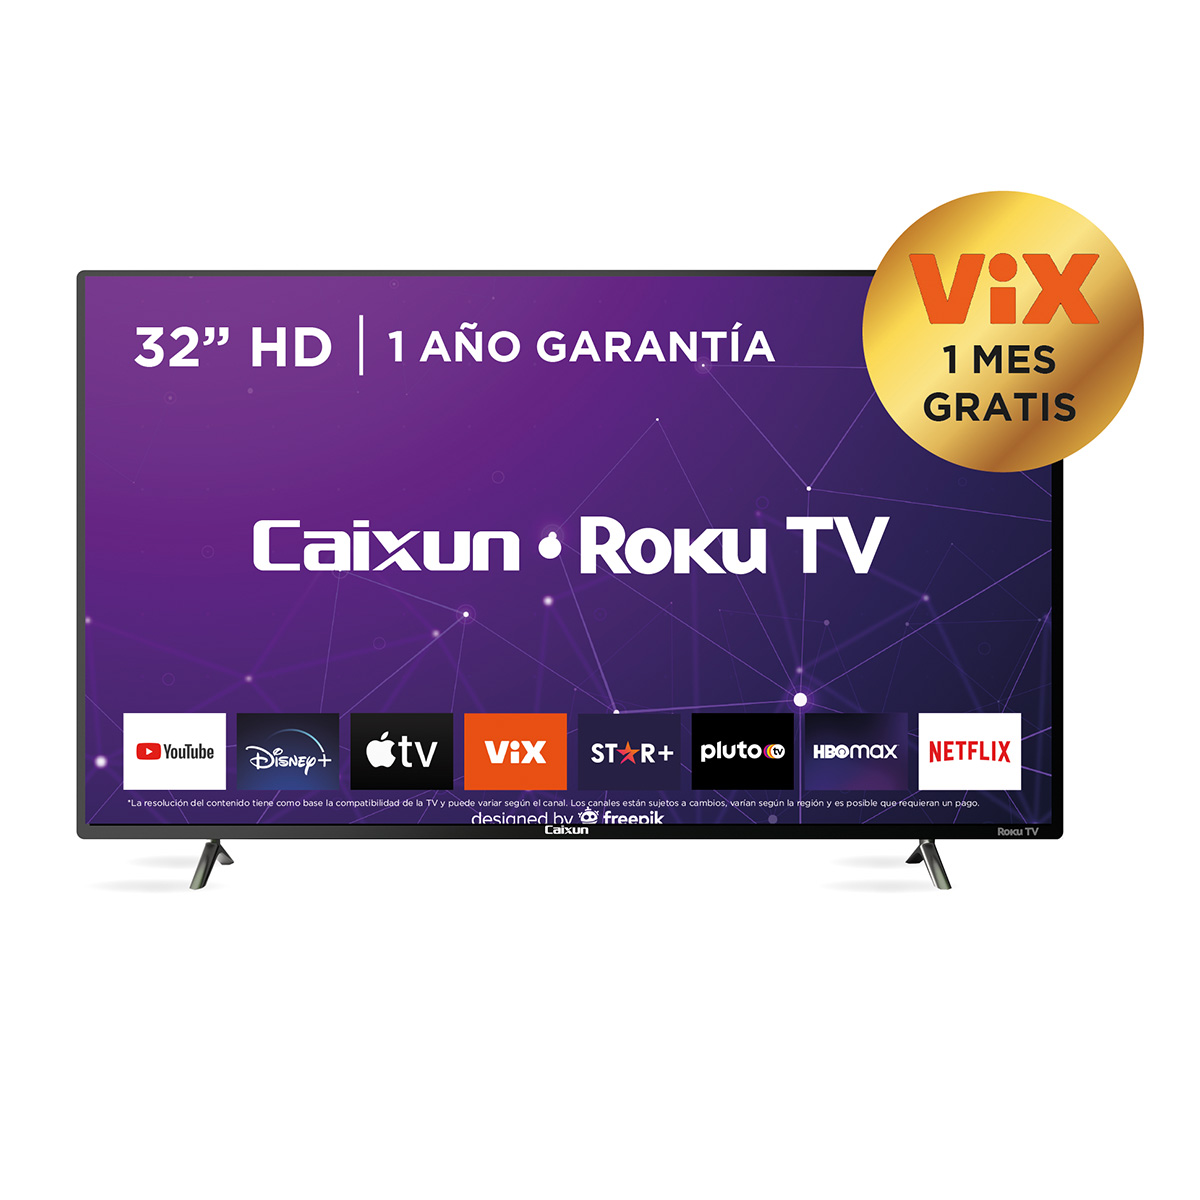 Roku TV - Caixun